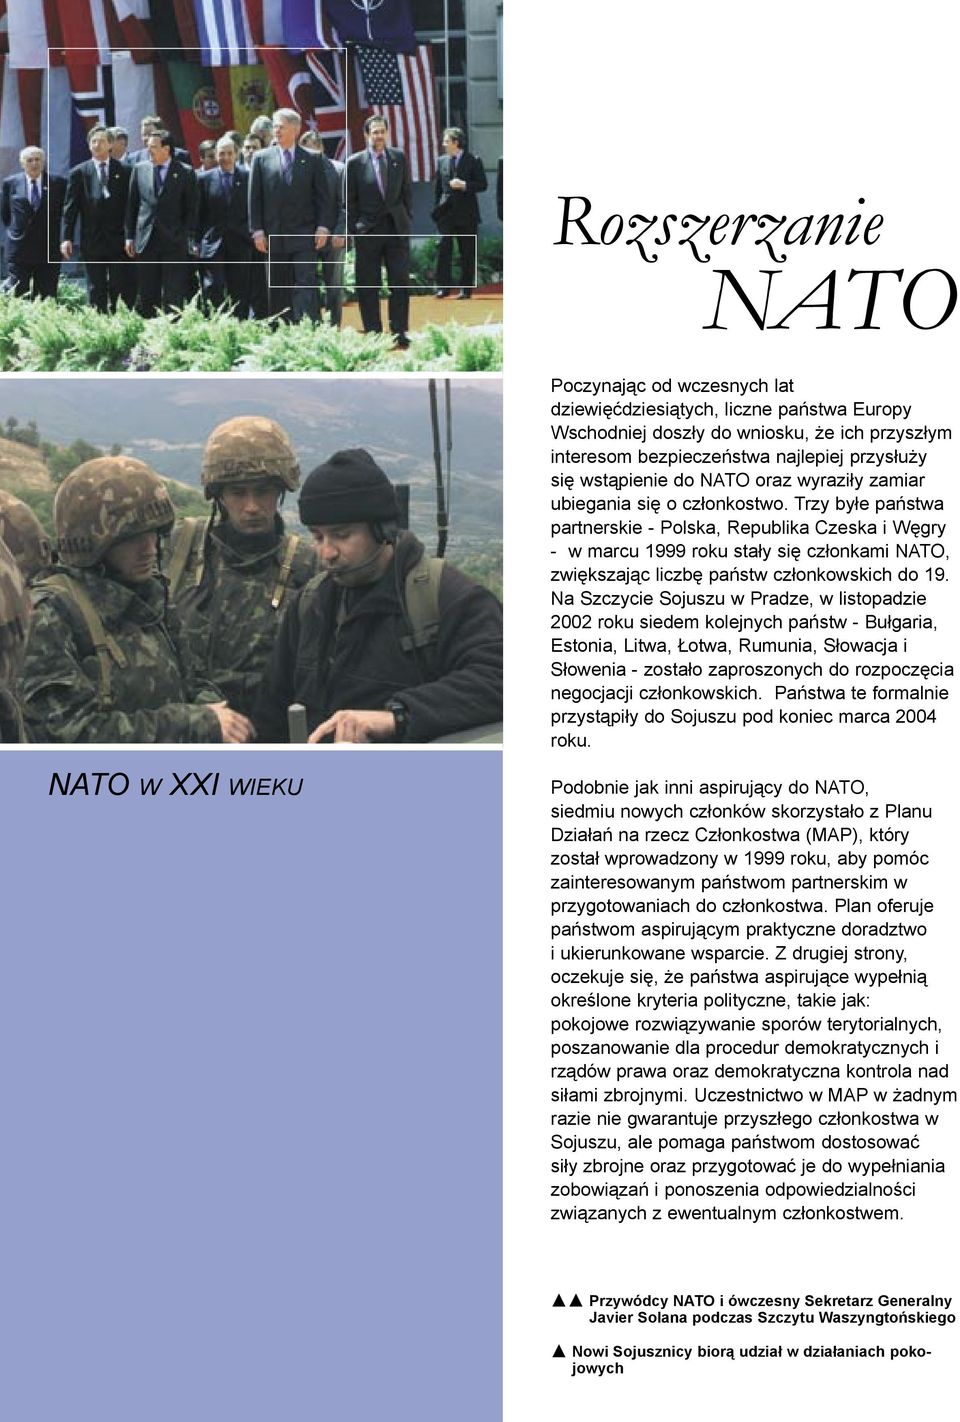 Trzy byłe państwa partnerskie - Polska, Republika Czeska i Węgry - w marcu 1999 roku stały się członkami NATO, zwiększając liczbę państw członkowskich do 19.